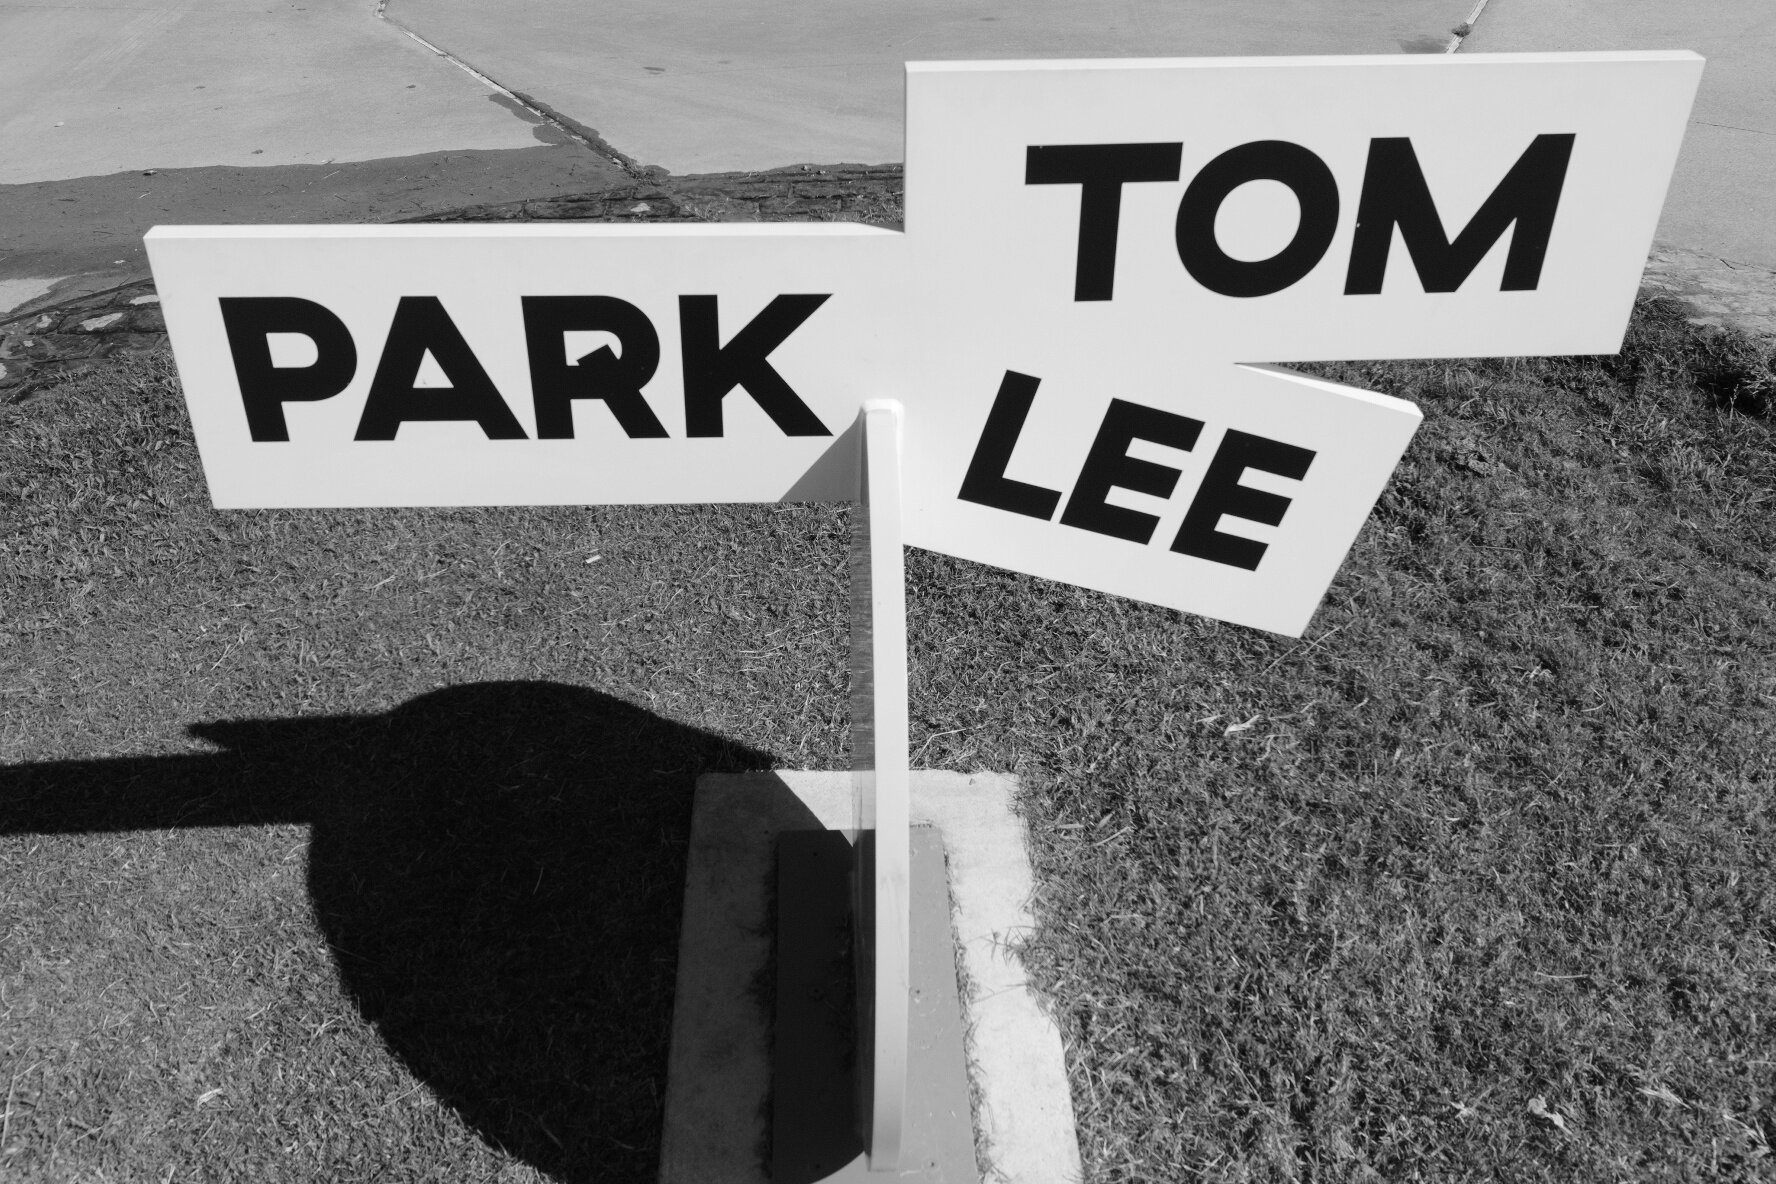 Tom Lee Park